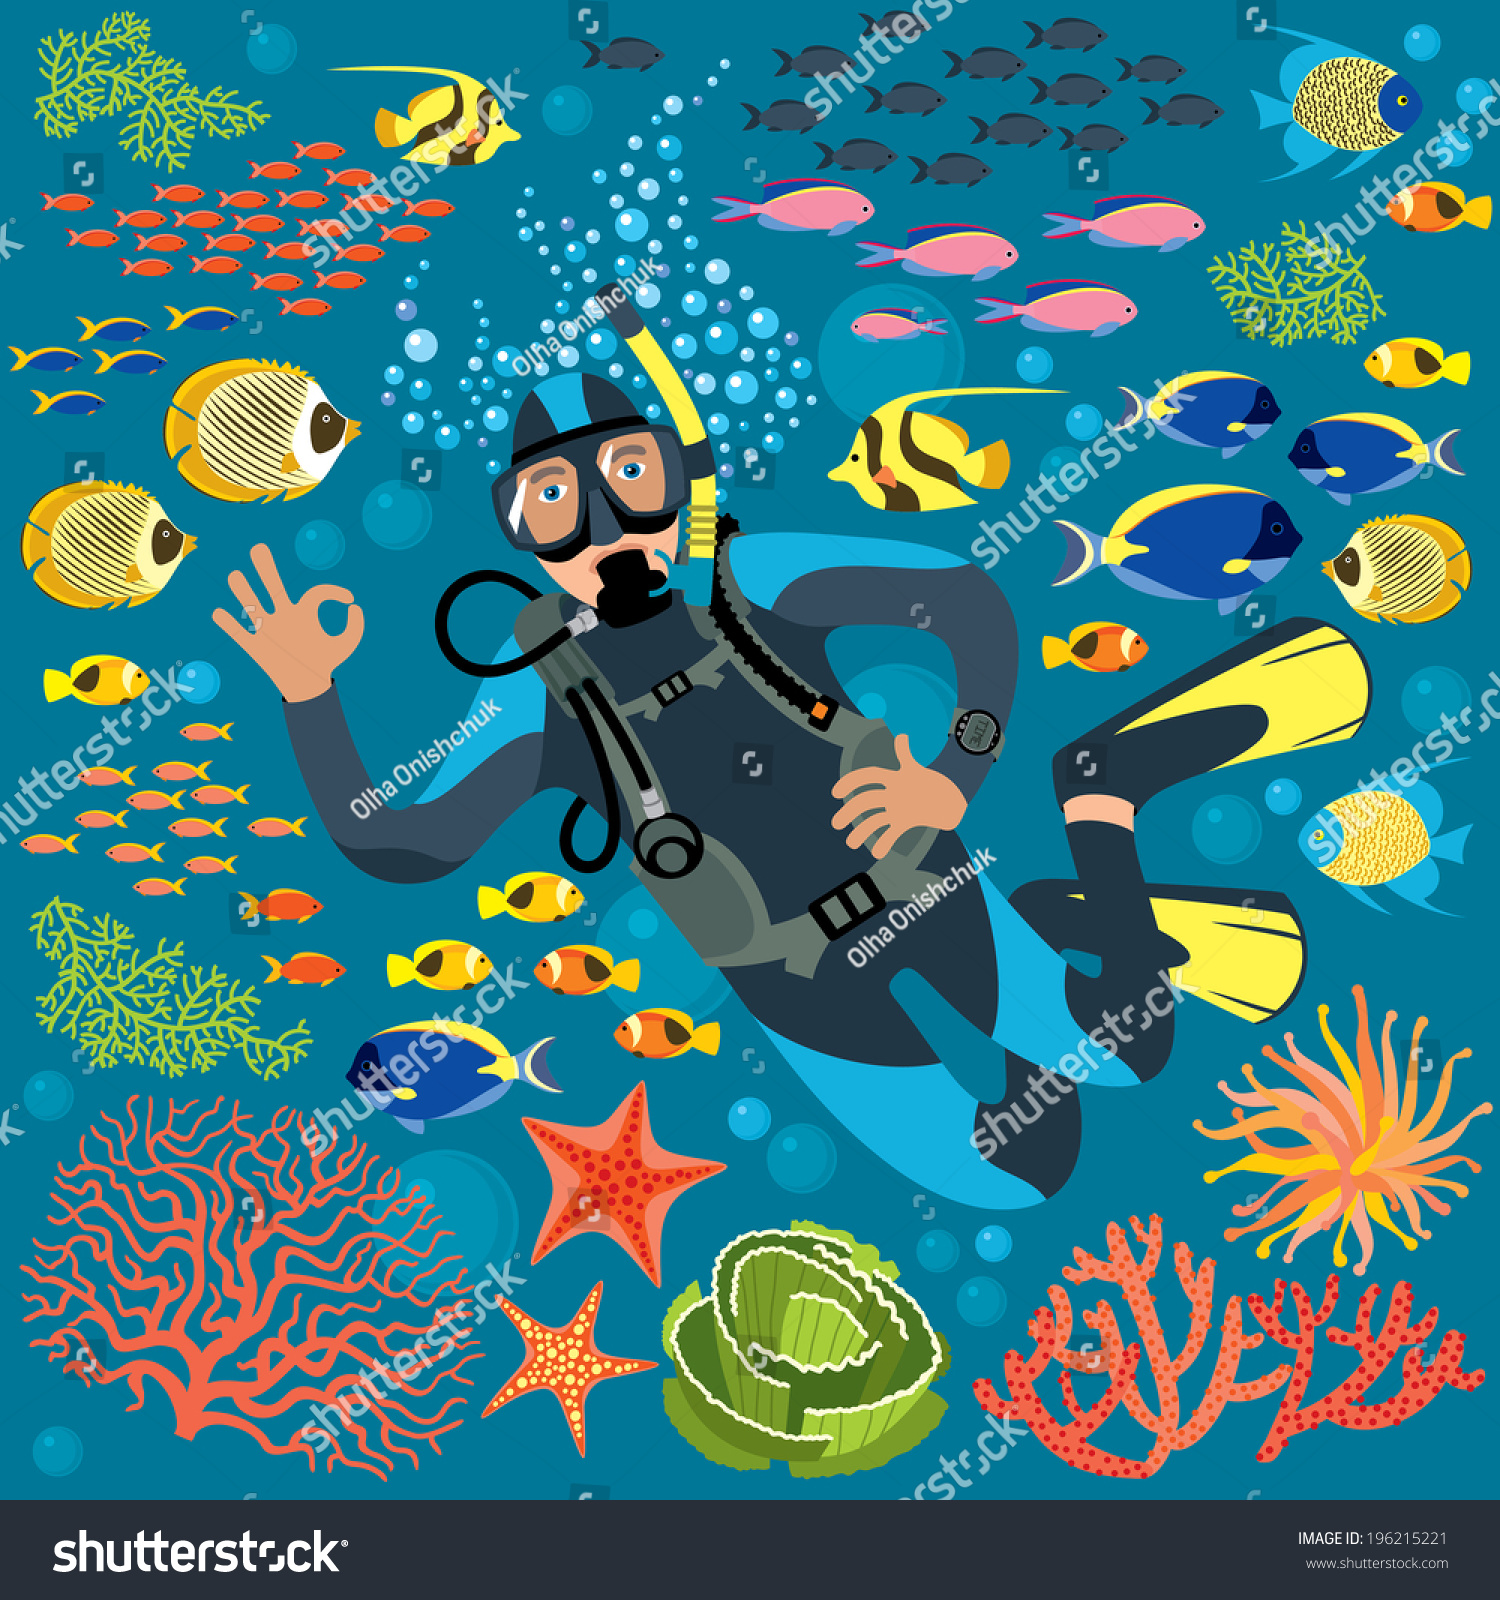 有水下植物和鱼类的潜水员-人物,运动/娱乐活动-海洛